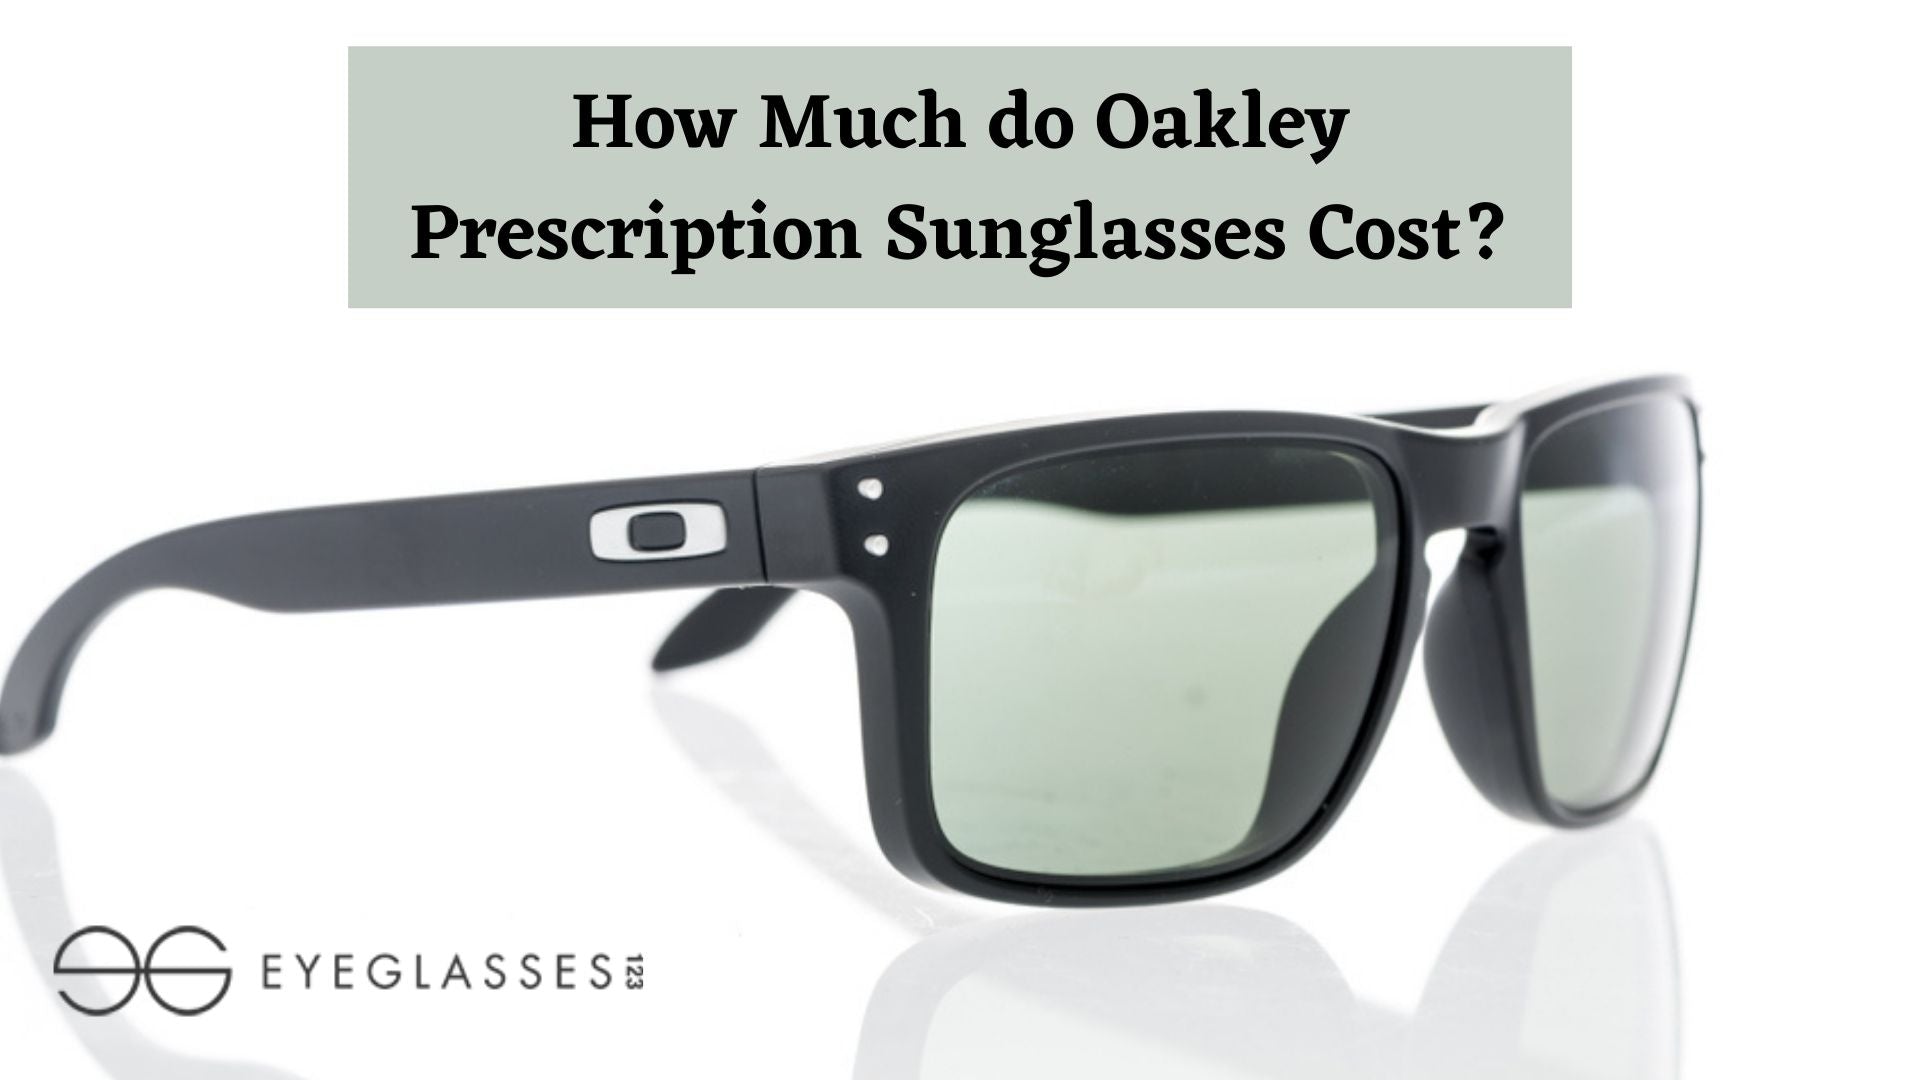 How Much do Oakley Prescription Sunglasses Cost